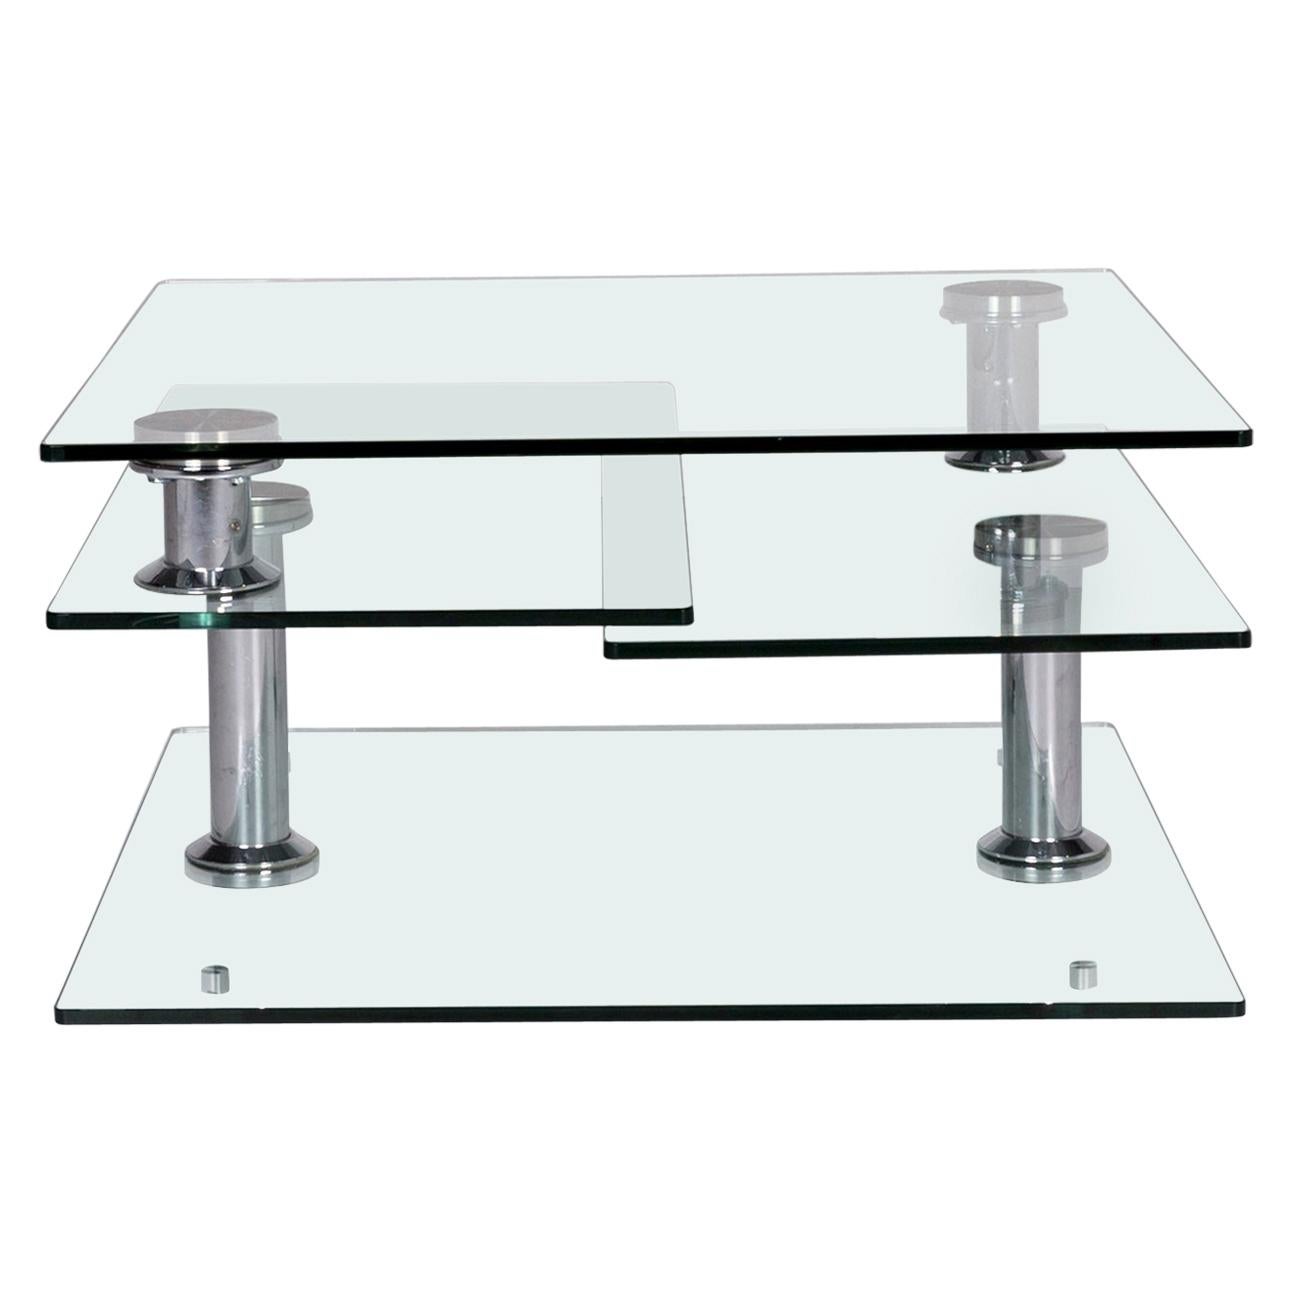 Hülsta Glass Couchtisch Silber Chrome Function Tisch